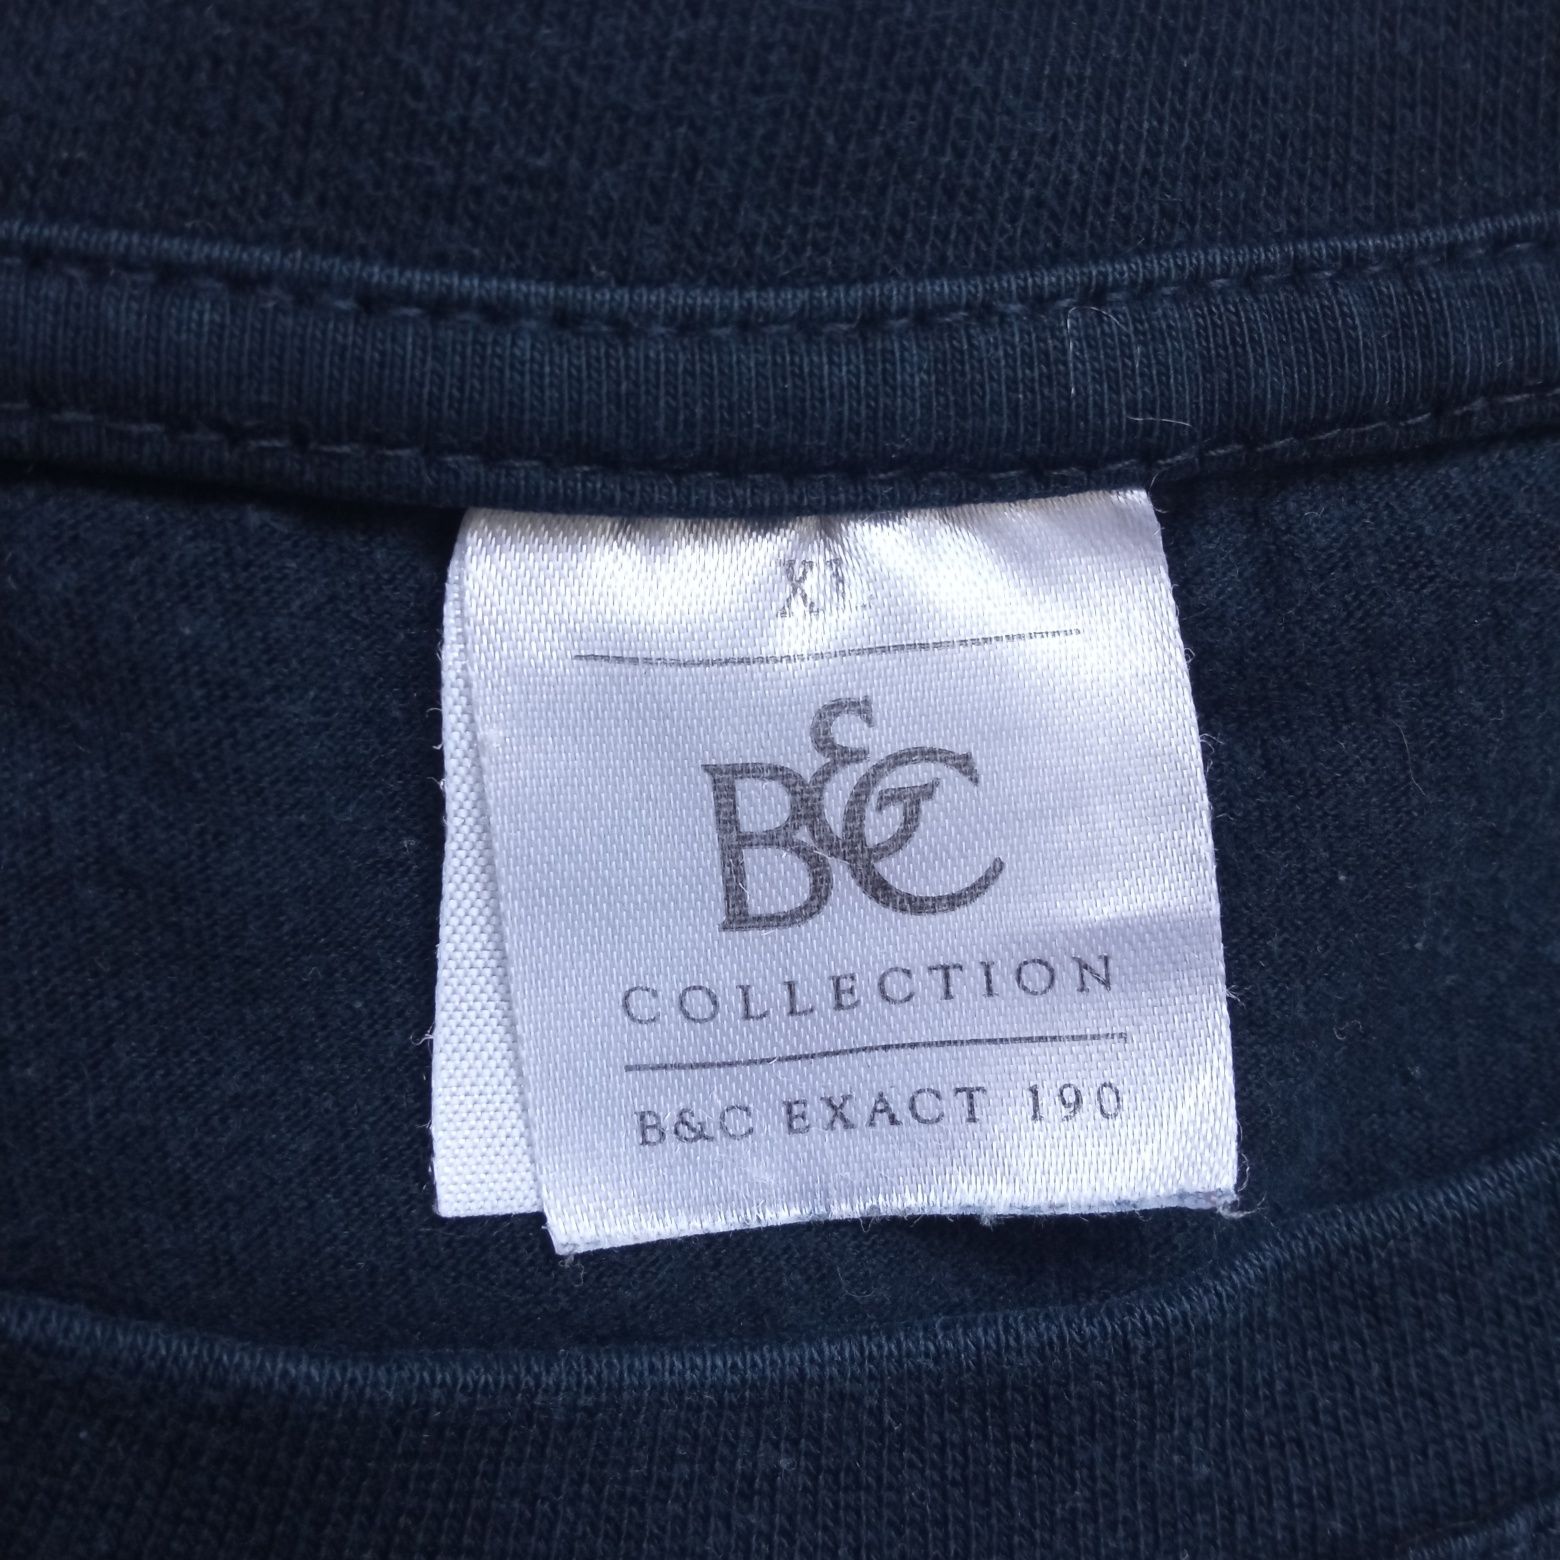 Koszulka męska t-shirt podróże travel exploring B&C Collection XL